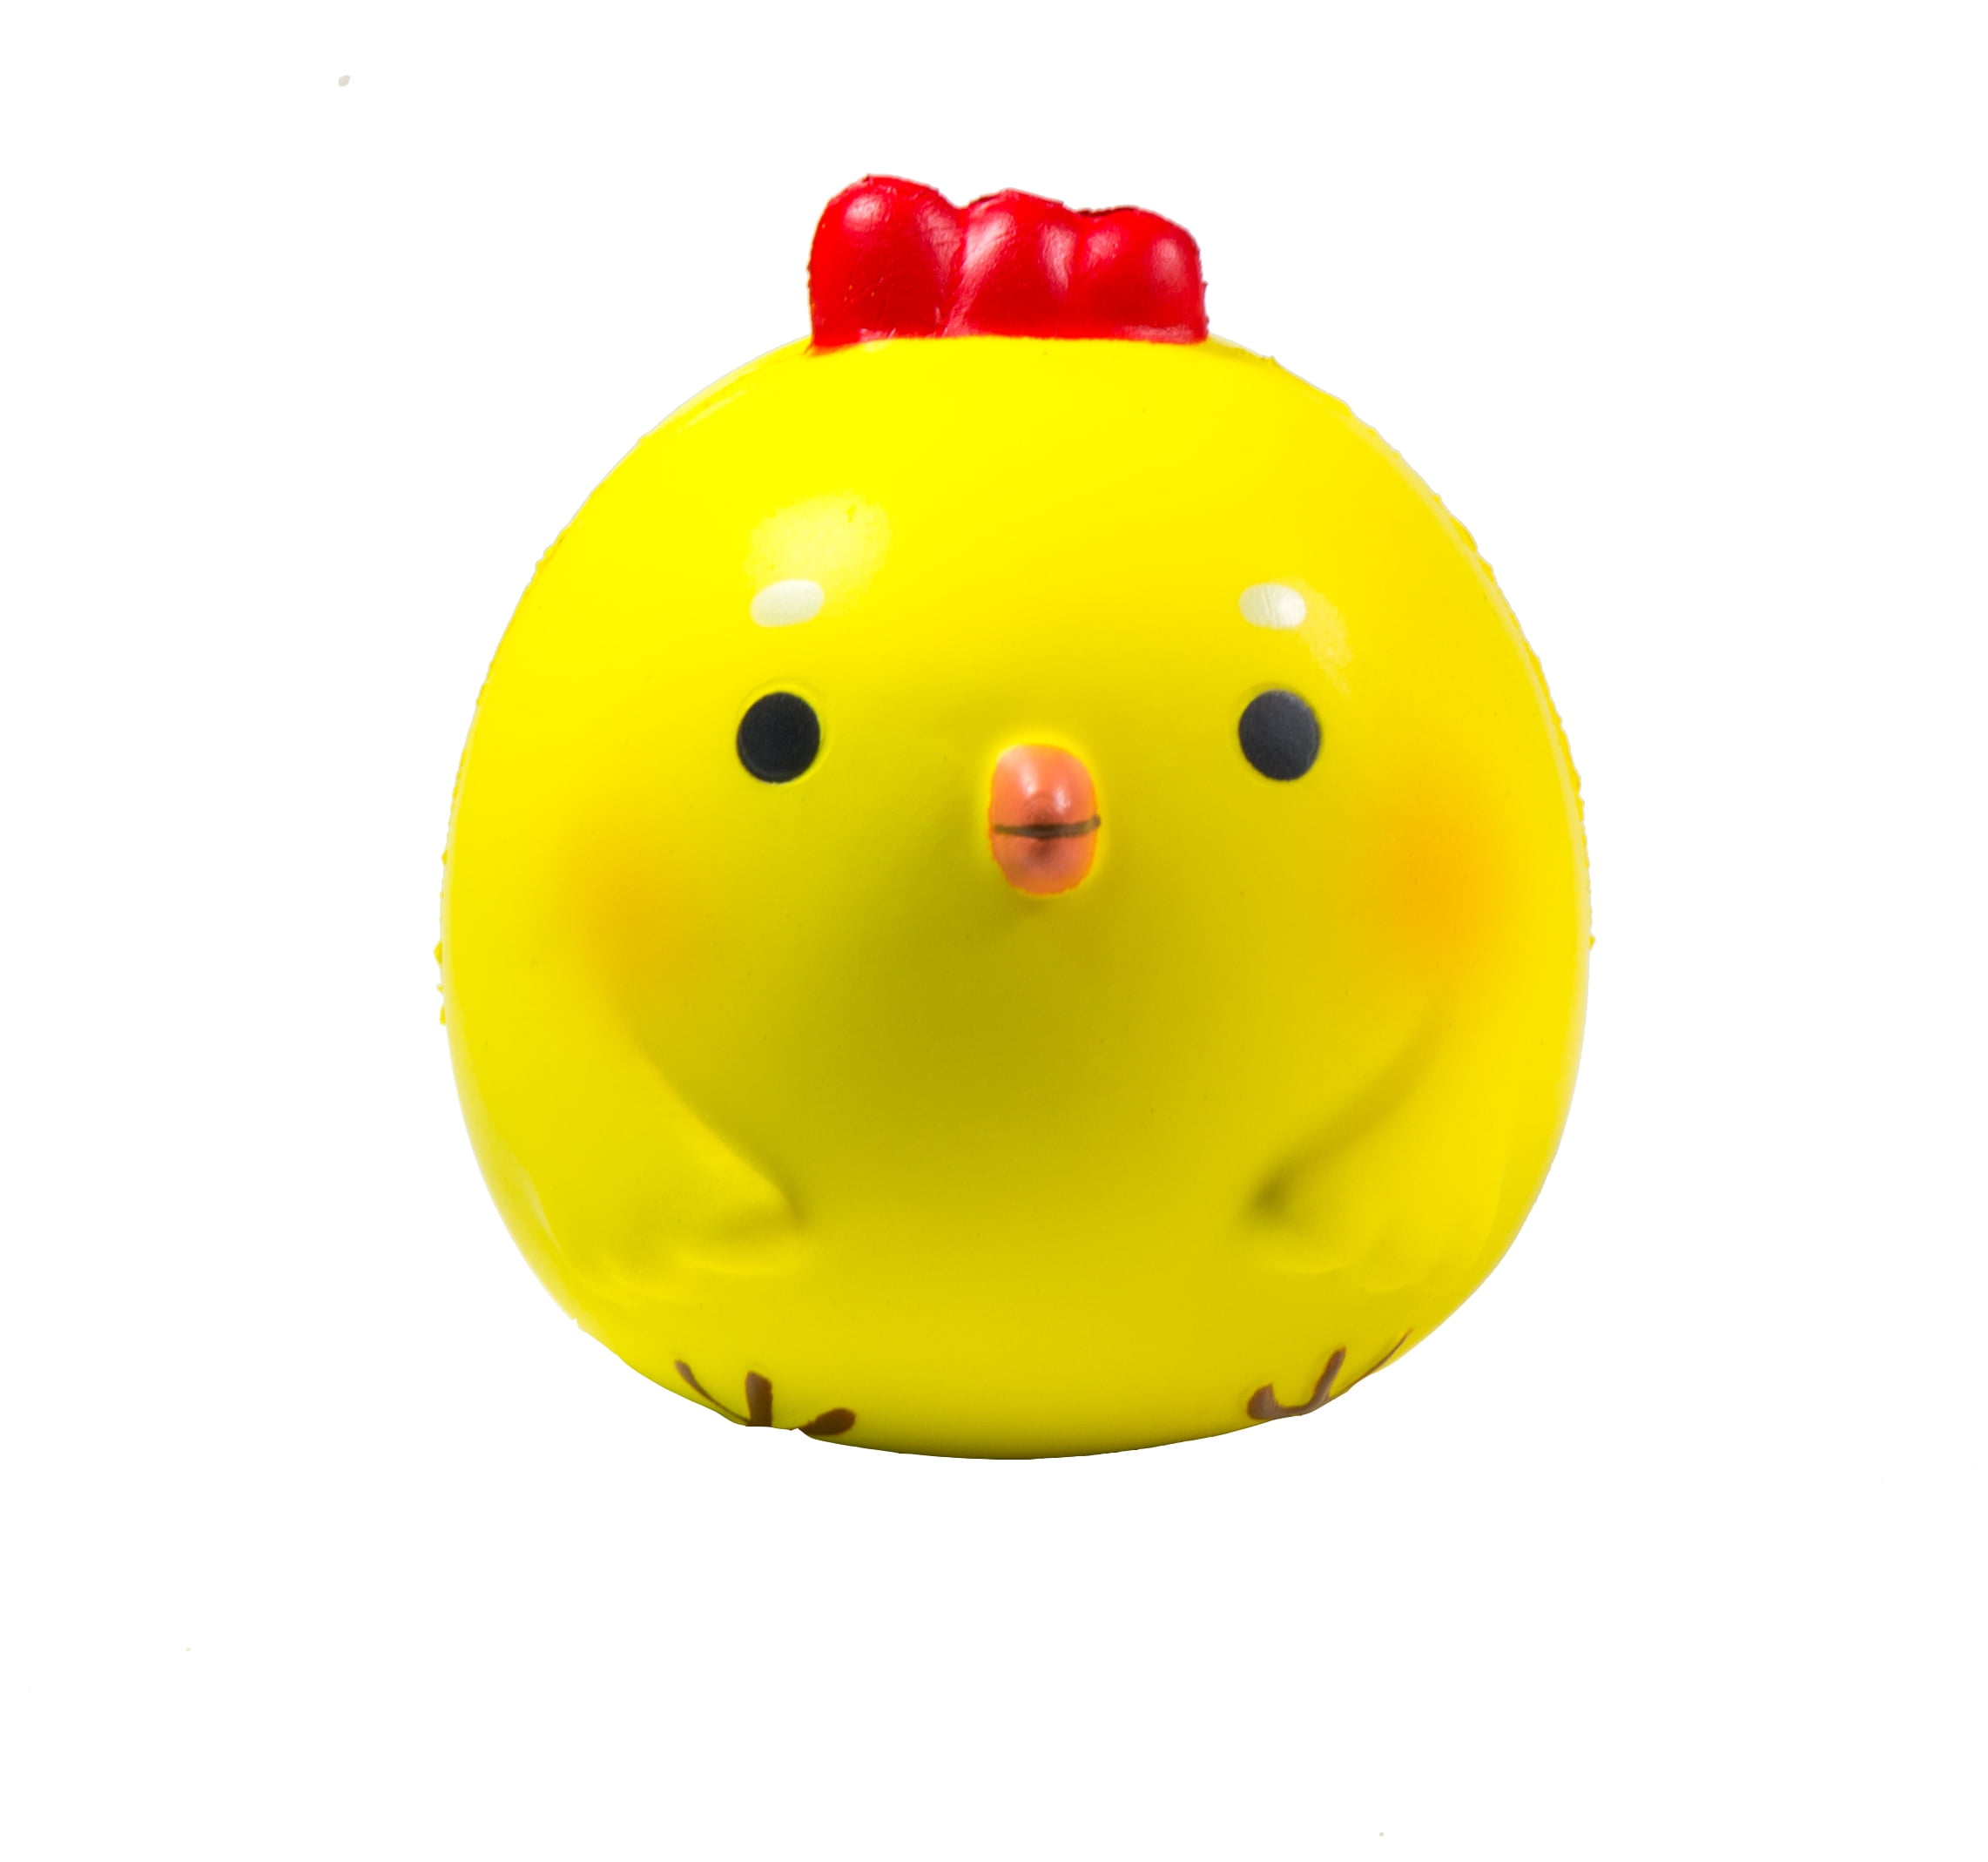  Jumbo  Baby Chick Squishy  Walmart com Walmart com